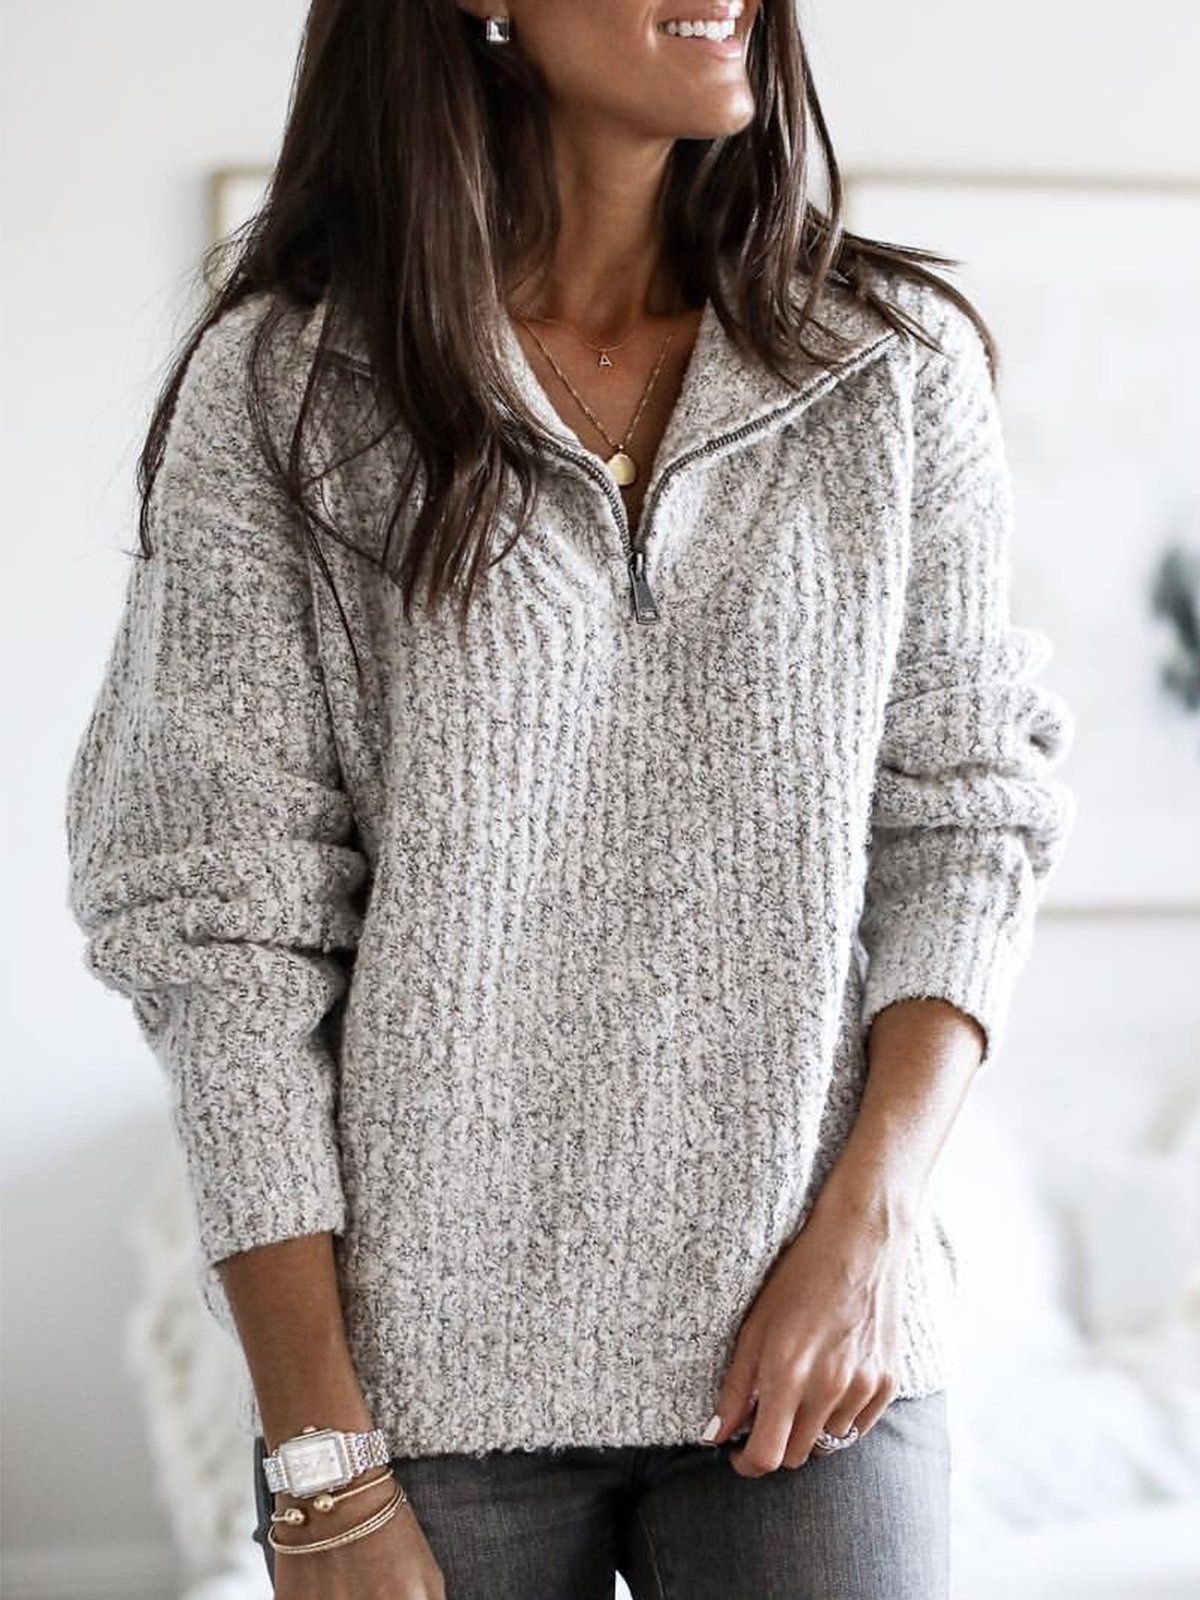 Versatile Attractive Women's Zipper Pullover Long-sleeved Sweaters